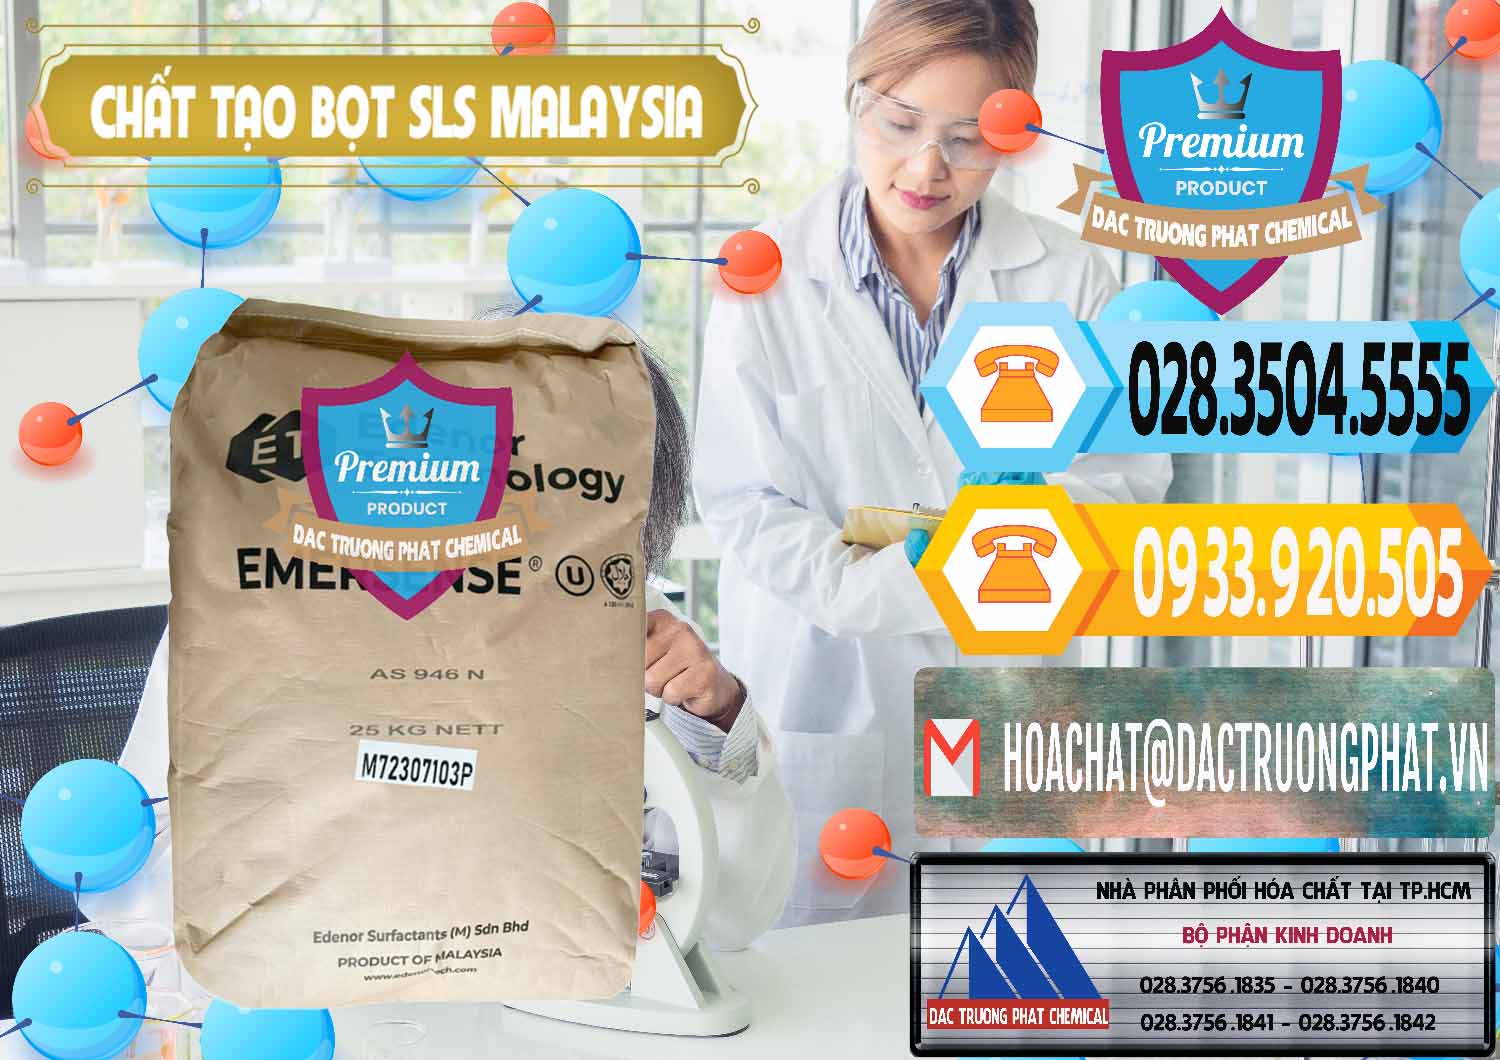 Nhà phân phối & bán Chất Tạo Bọt SLS Emersense Mã Lai Malaysia - 0381 - Nơi chuyên cung cấp và kinh doanh hóa chất tại TP.HCM - hoachattayrua.net